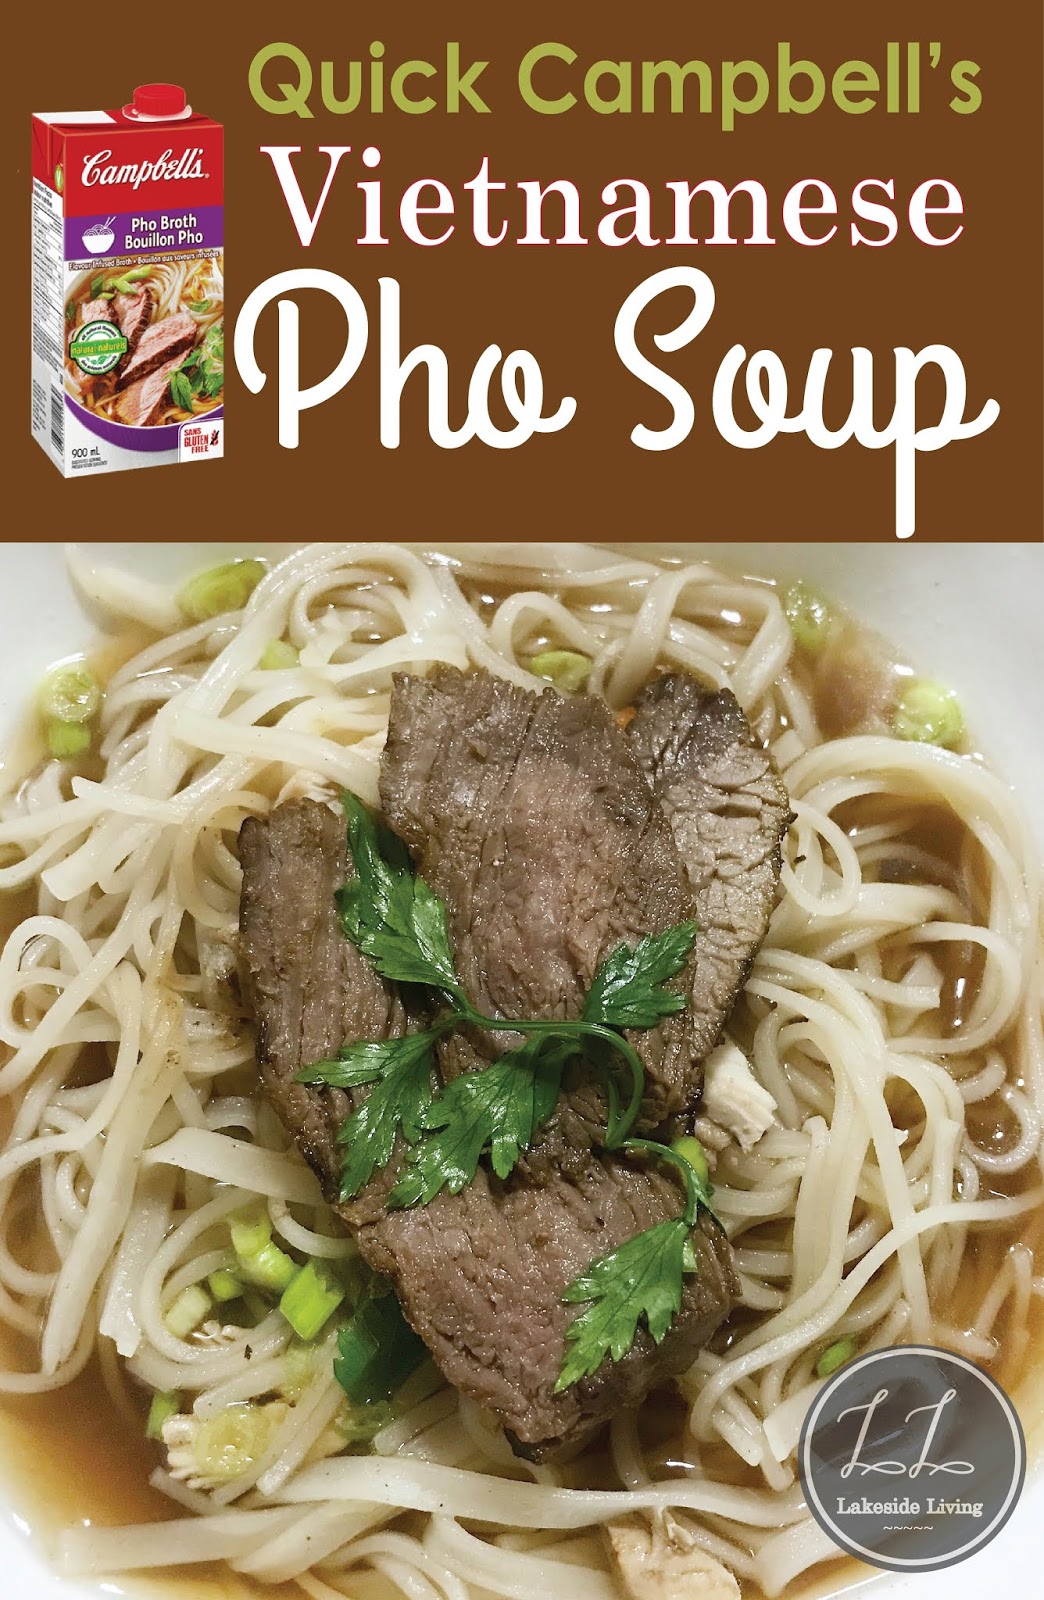 Authentic Vietnamese Pho 'Beef' Noodle Soup